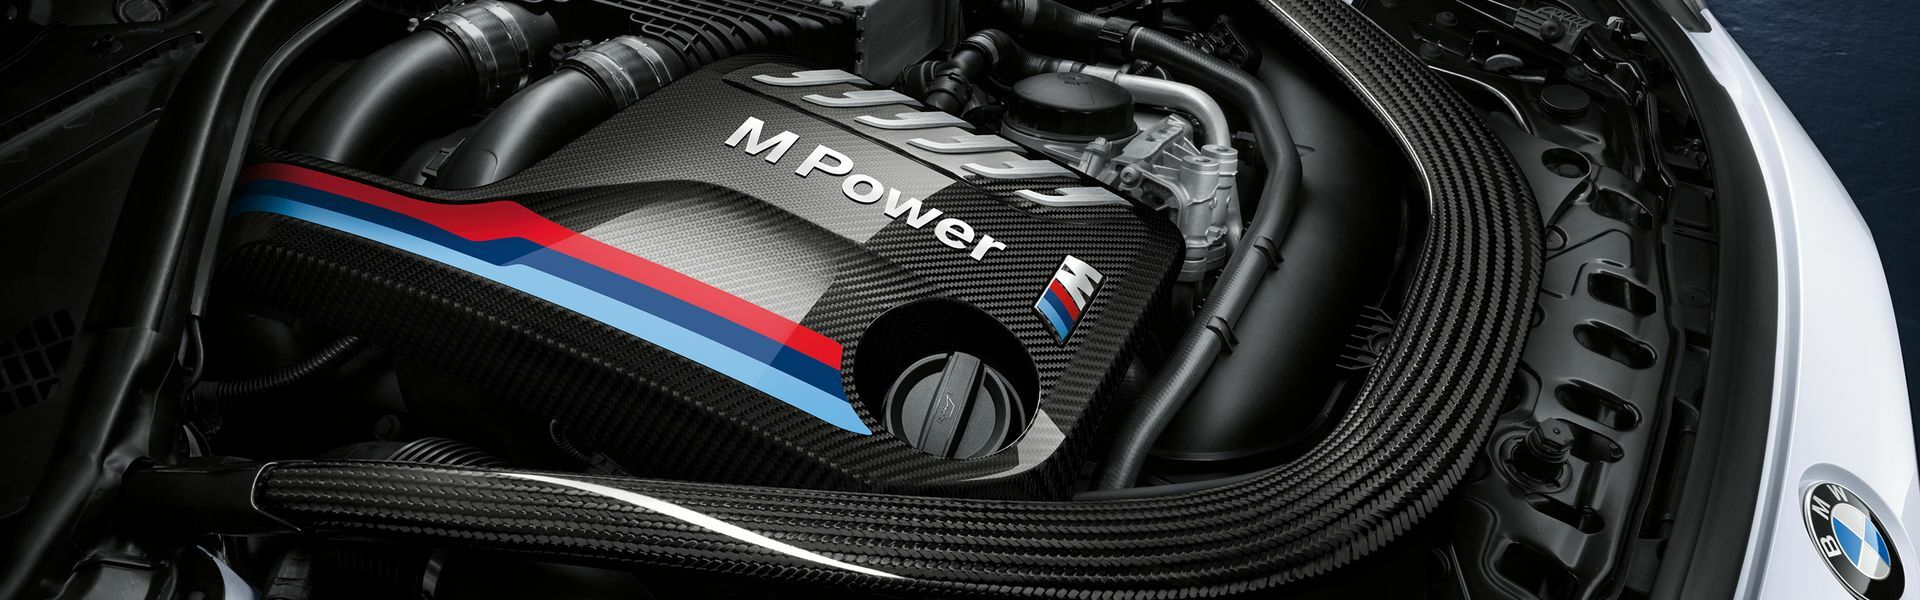 Zvýšení výkonu/ Softwarové úpravy/ Drobné performance díly pro automobil Porsche 911 Carrera /S/4/4S/GTS 997 DFI